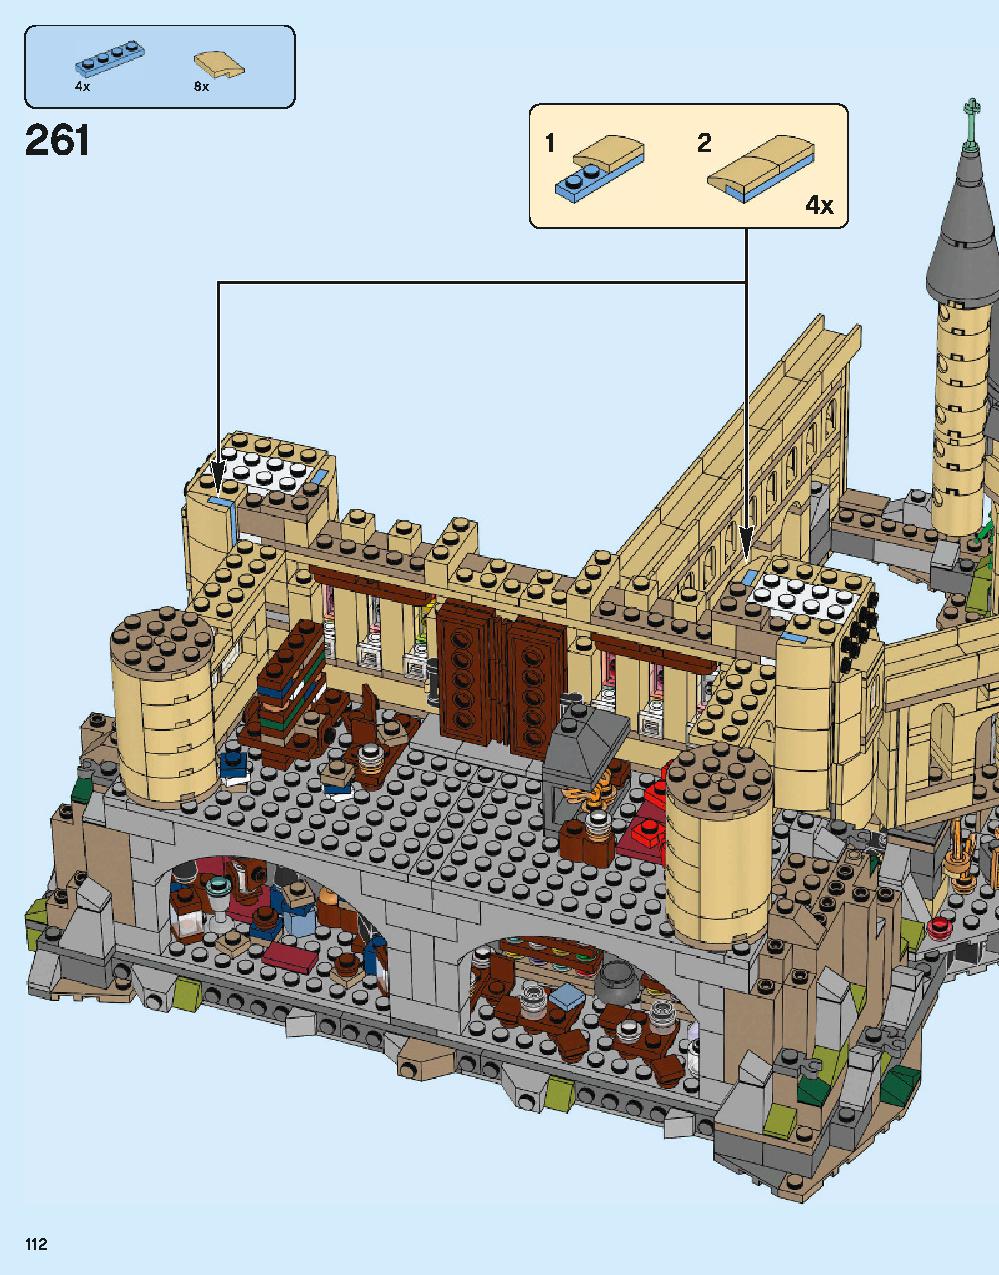 ホグワーツ城 71043 レゴの商品情報 レゴの説明書・組立方法 112 page